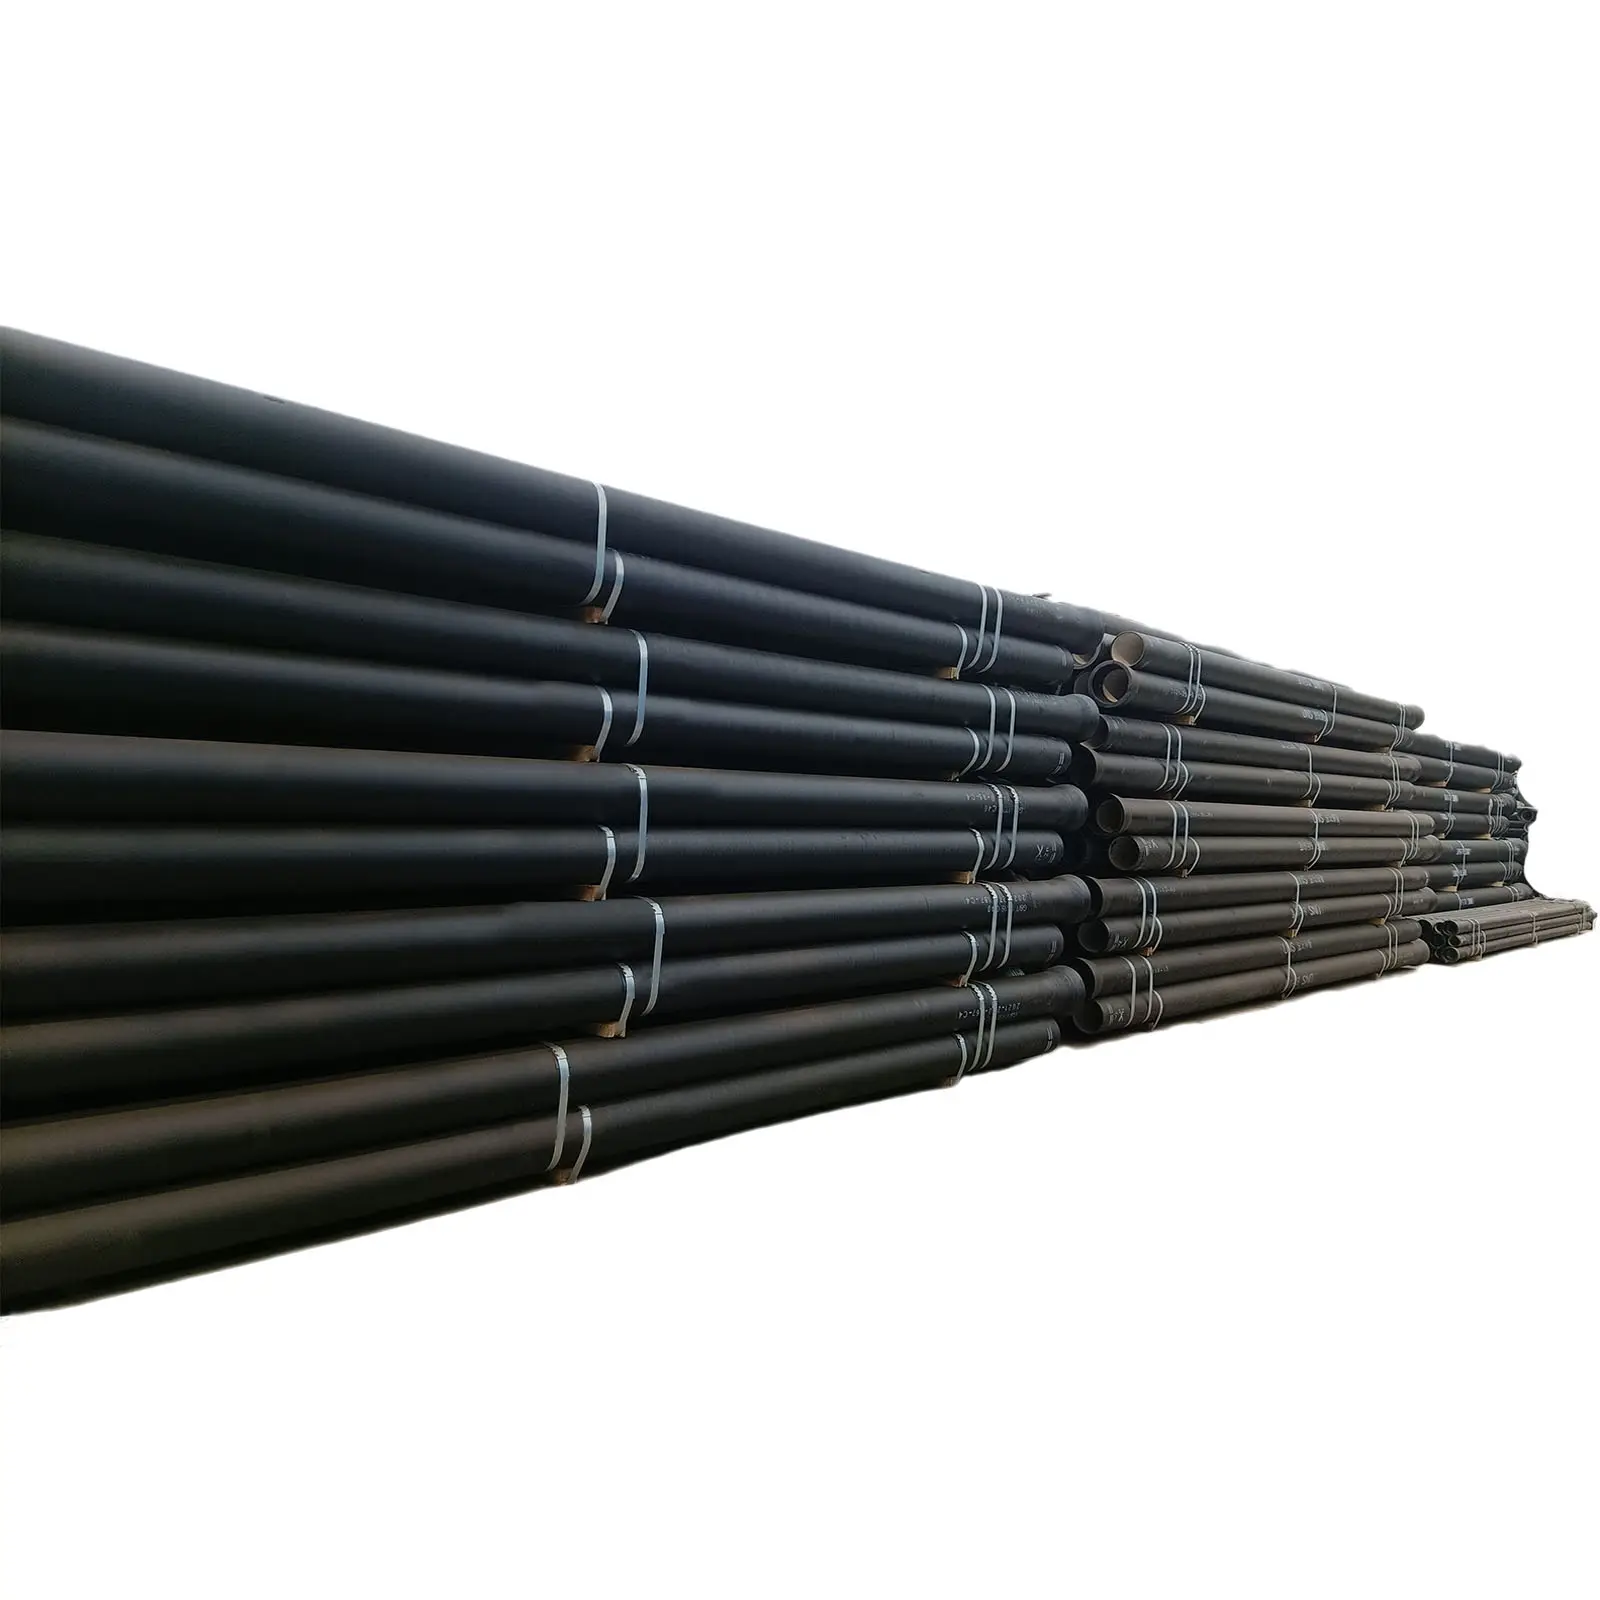 Precio barato DN600 C30 Clase K9 fabricantes de tubos de hierro fundido dúctil